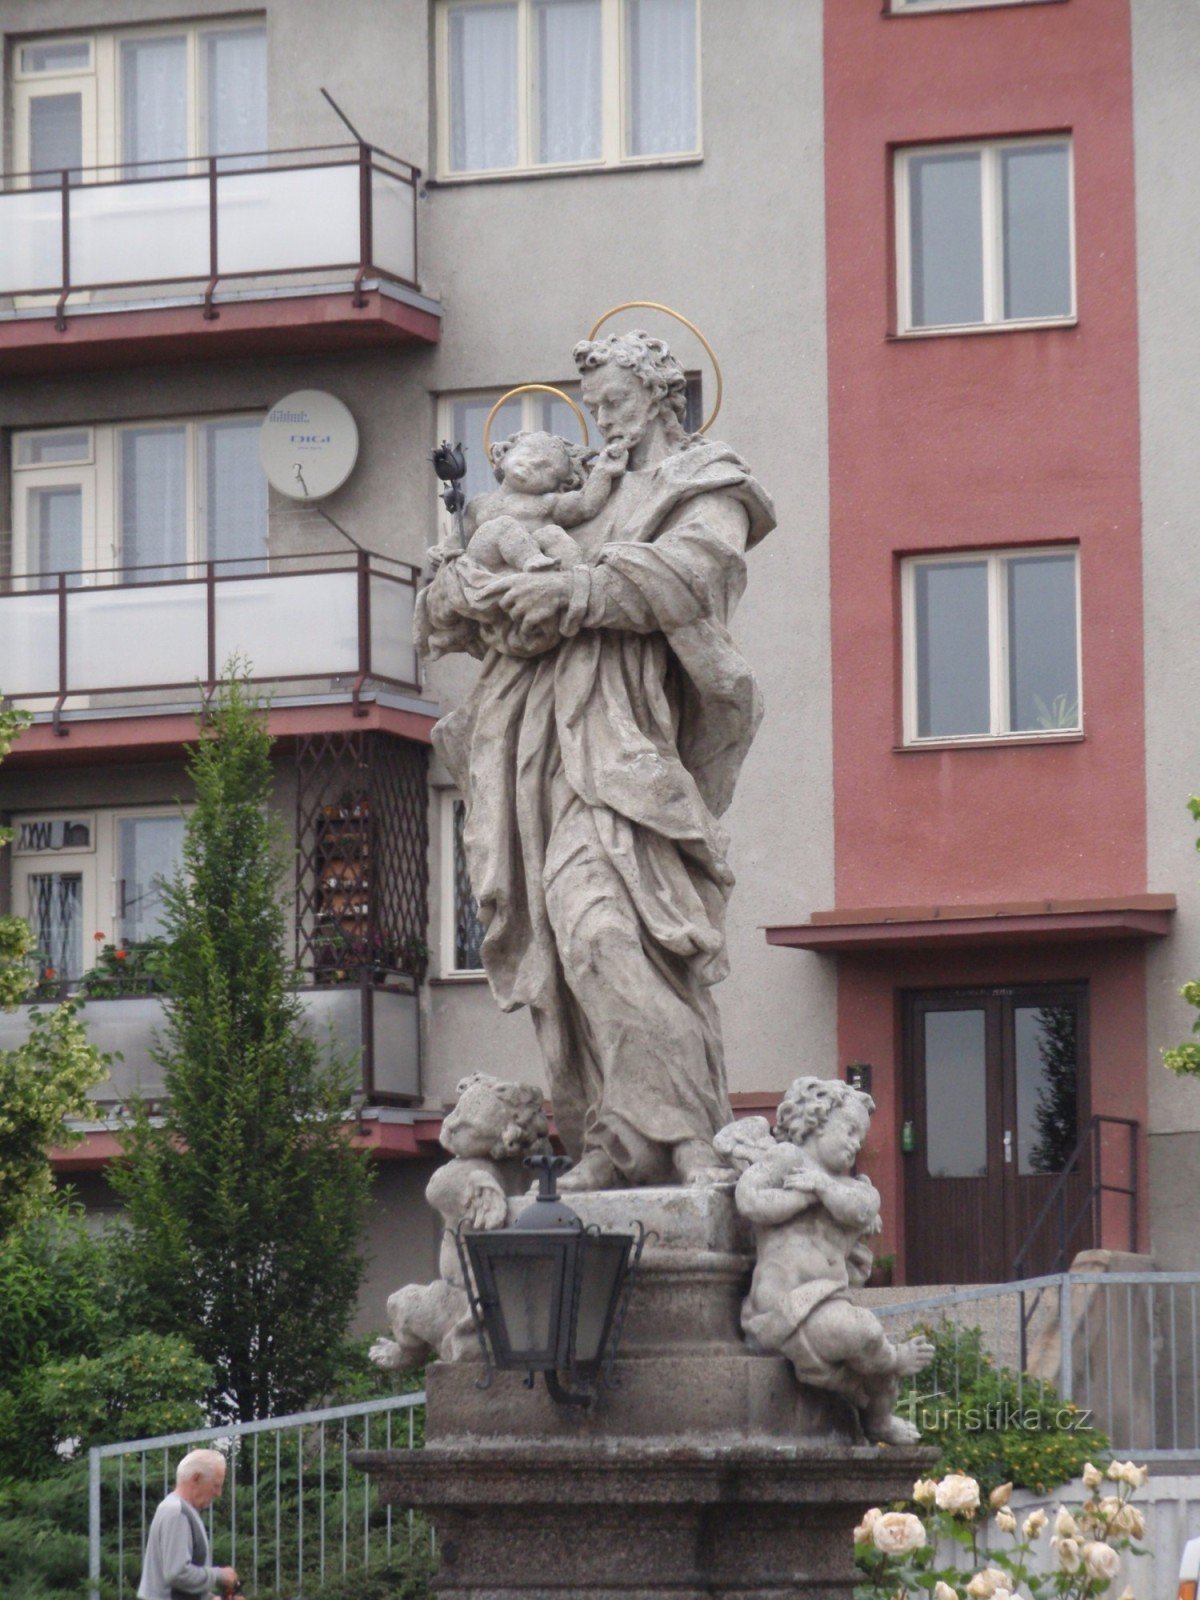 圣雕像约瑟夫和小耶稣在 Velké Meziříčí